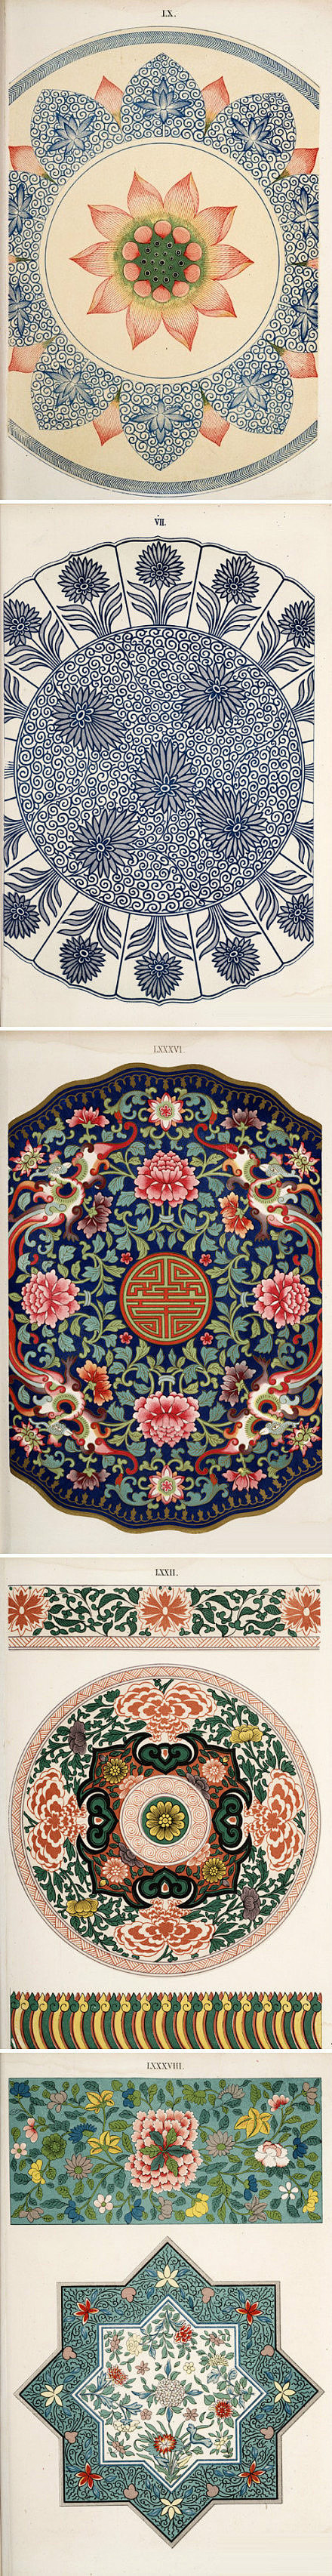 迷醉中国风：中国经典传统纹样。